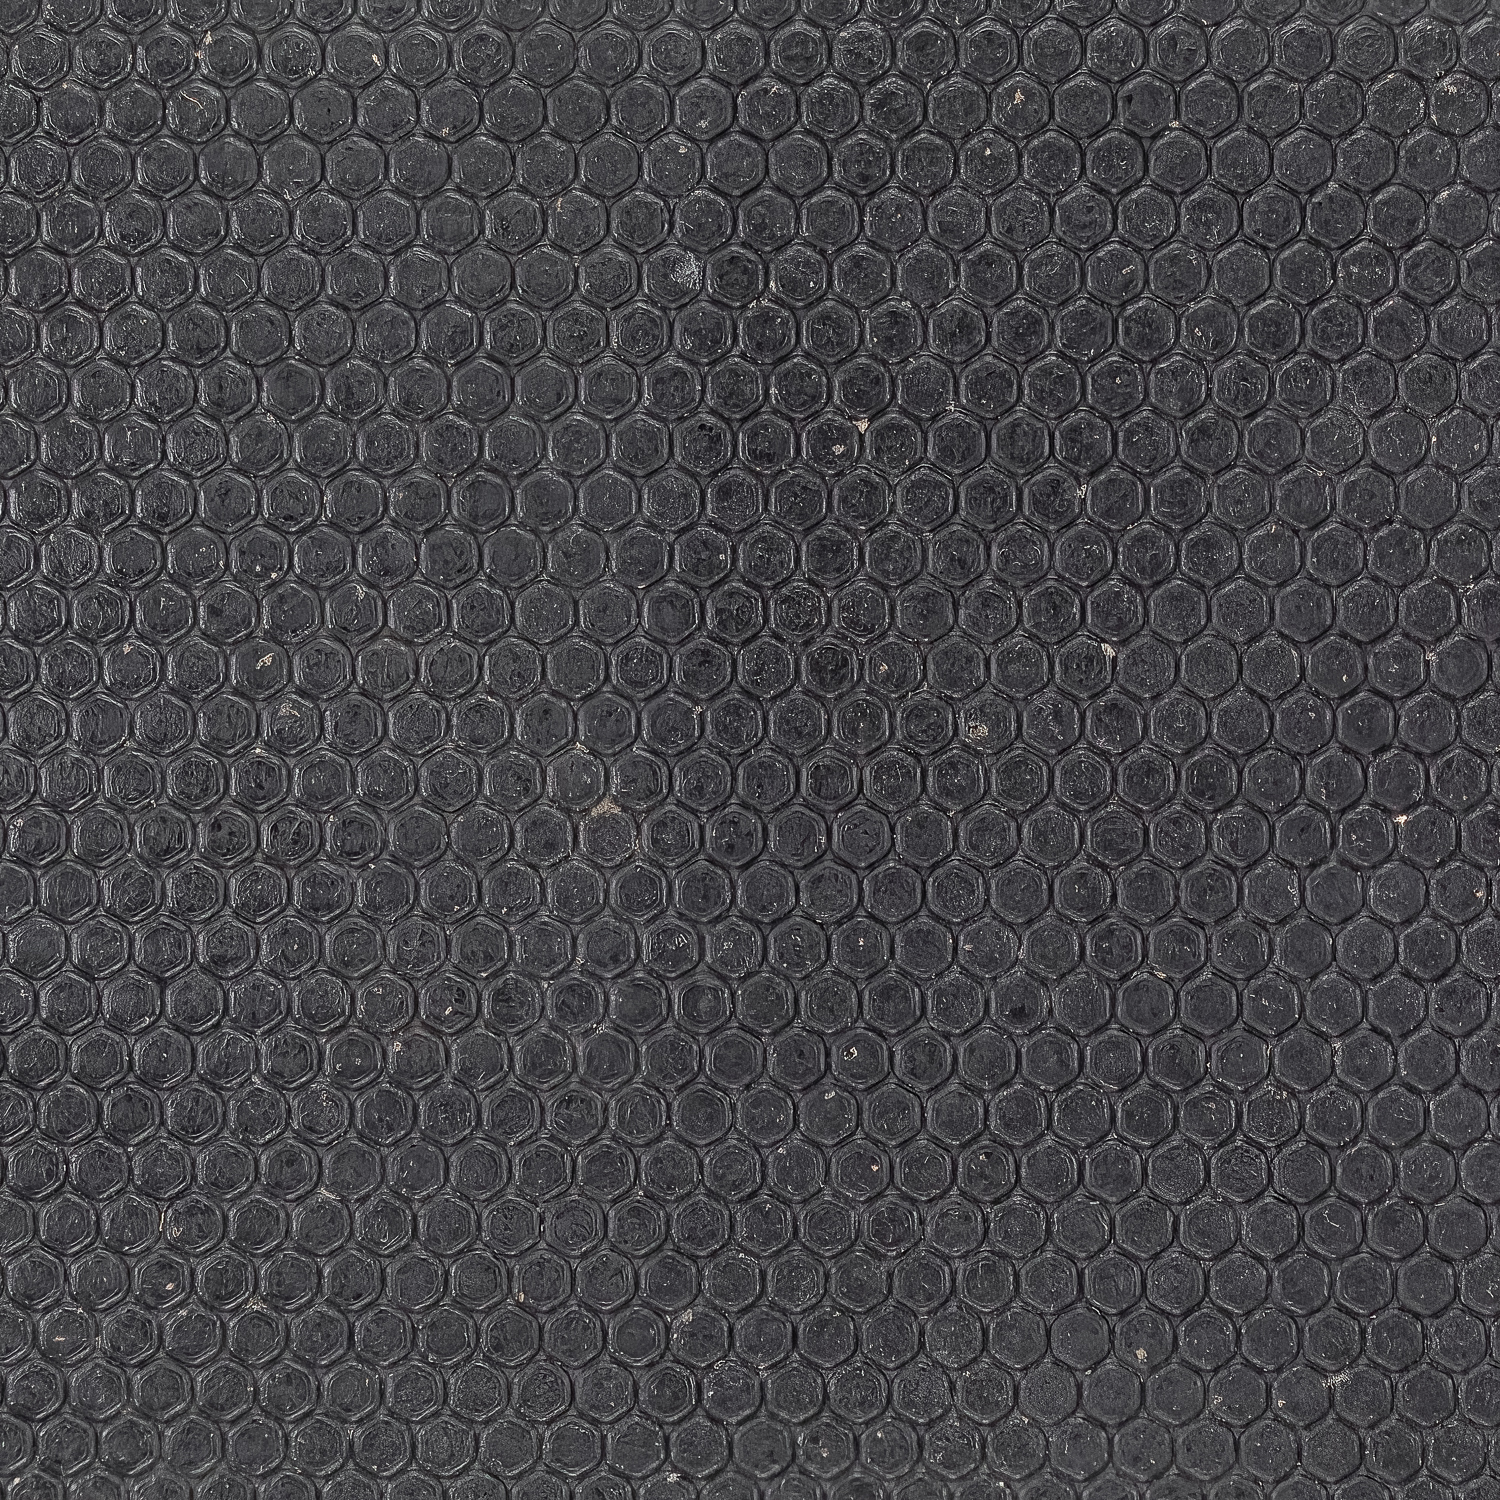 Sundance Rubber Matt 4x6 Ft x 3/4 Inch Straight Edge Standard top surface close up.